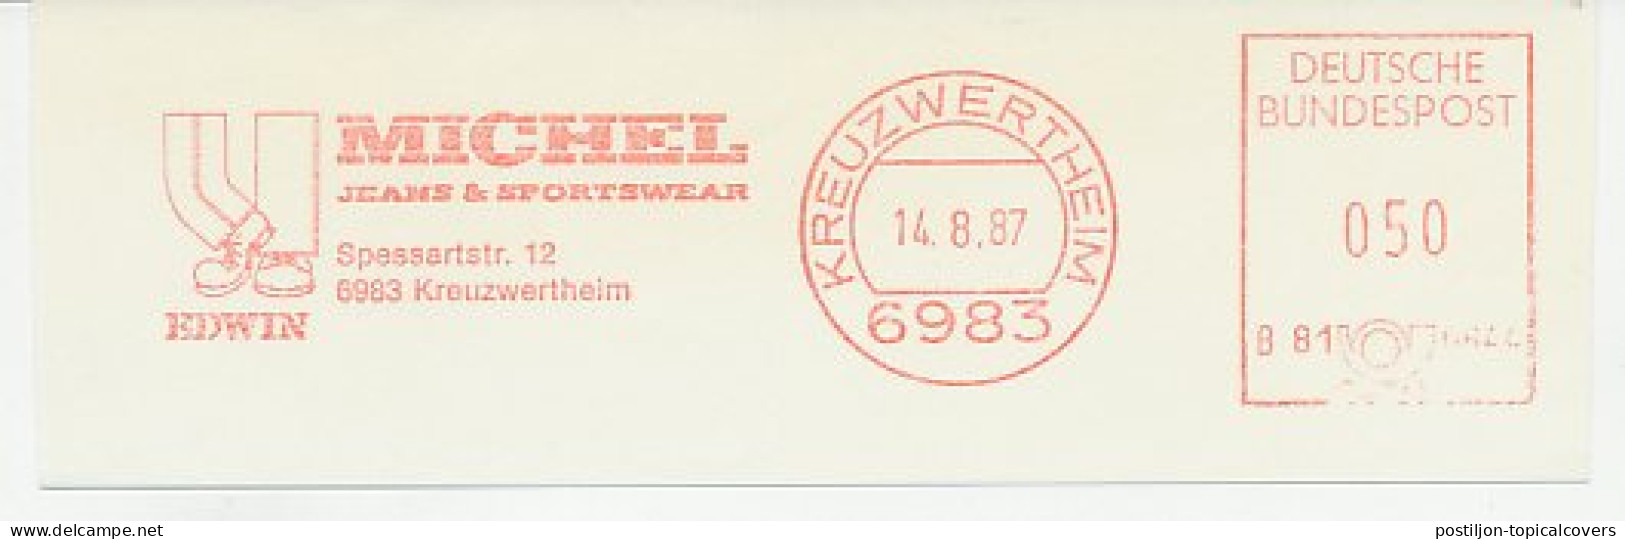 Meter Cut Germany 1987 Jeans - Sportswear - Kostüme